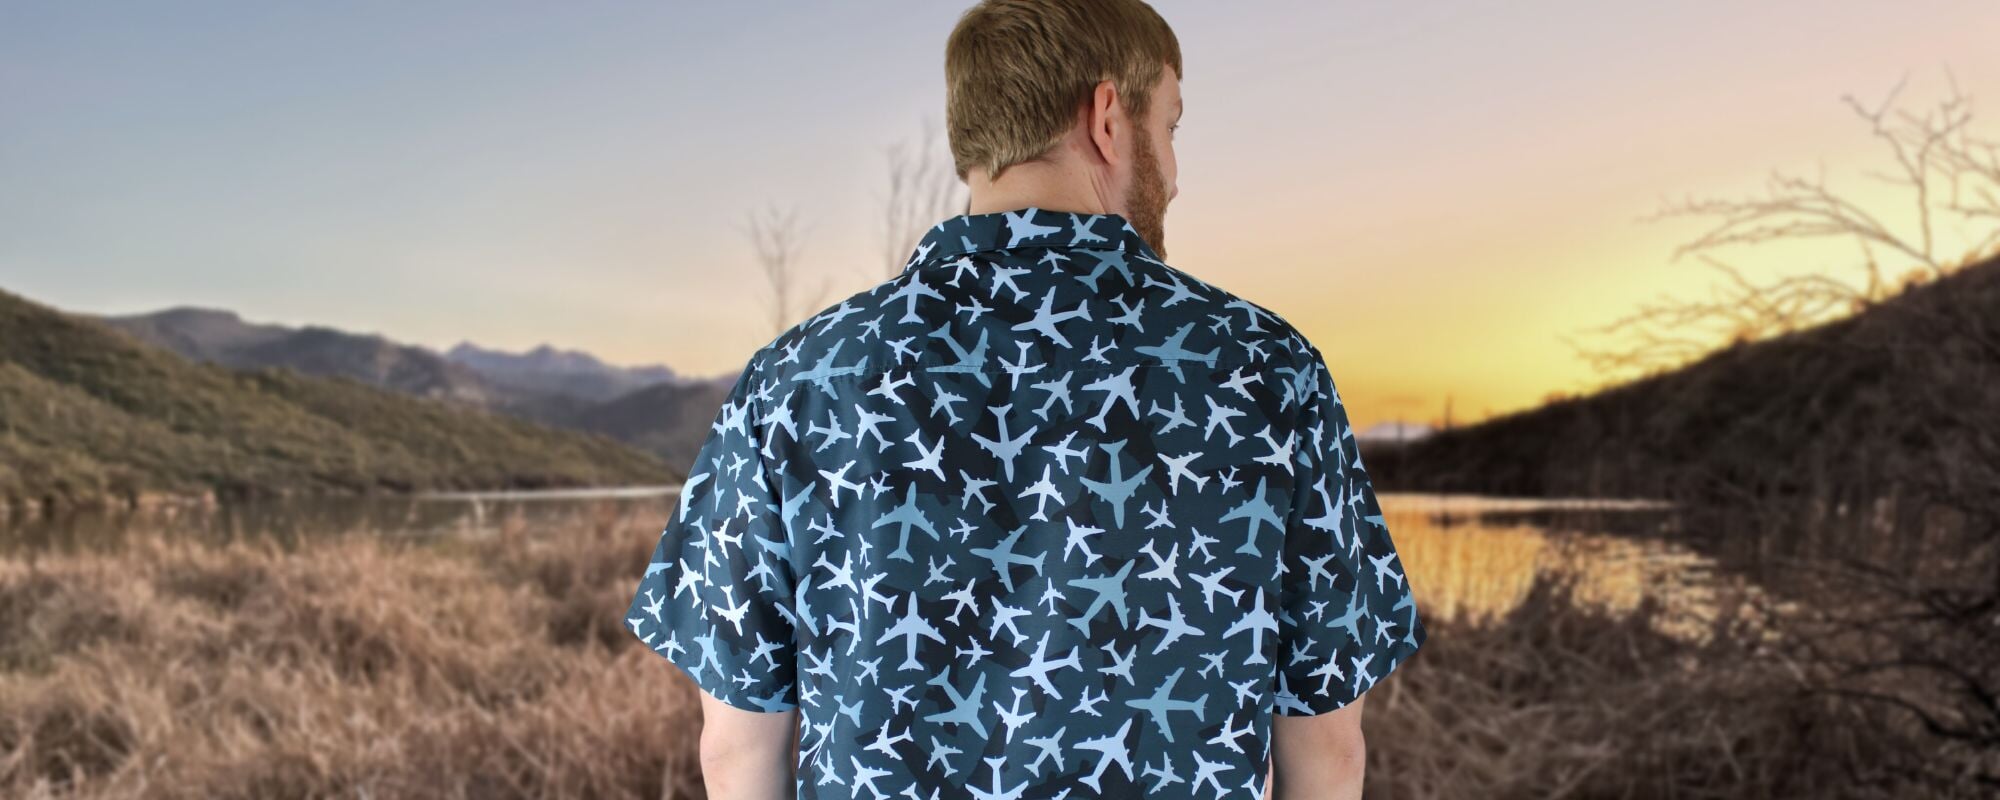 Airplane Hawaiian Shirts and Button Ups Nerd Geek Nerdy Geeky Hawaiian